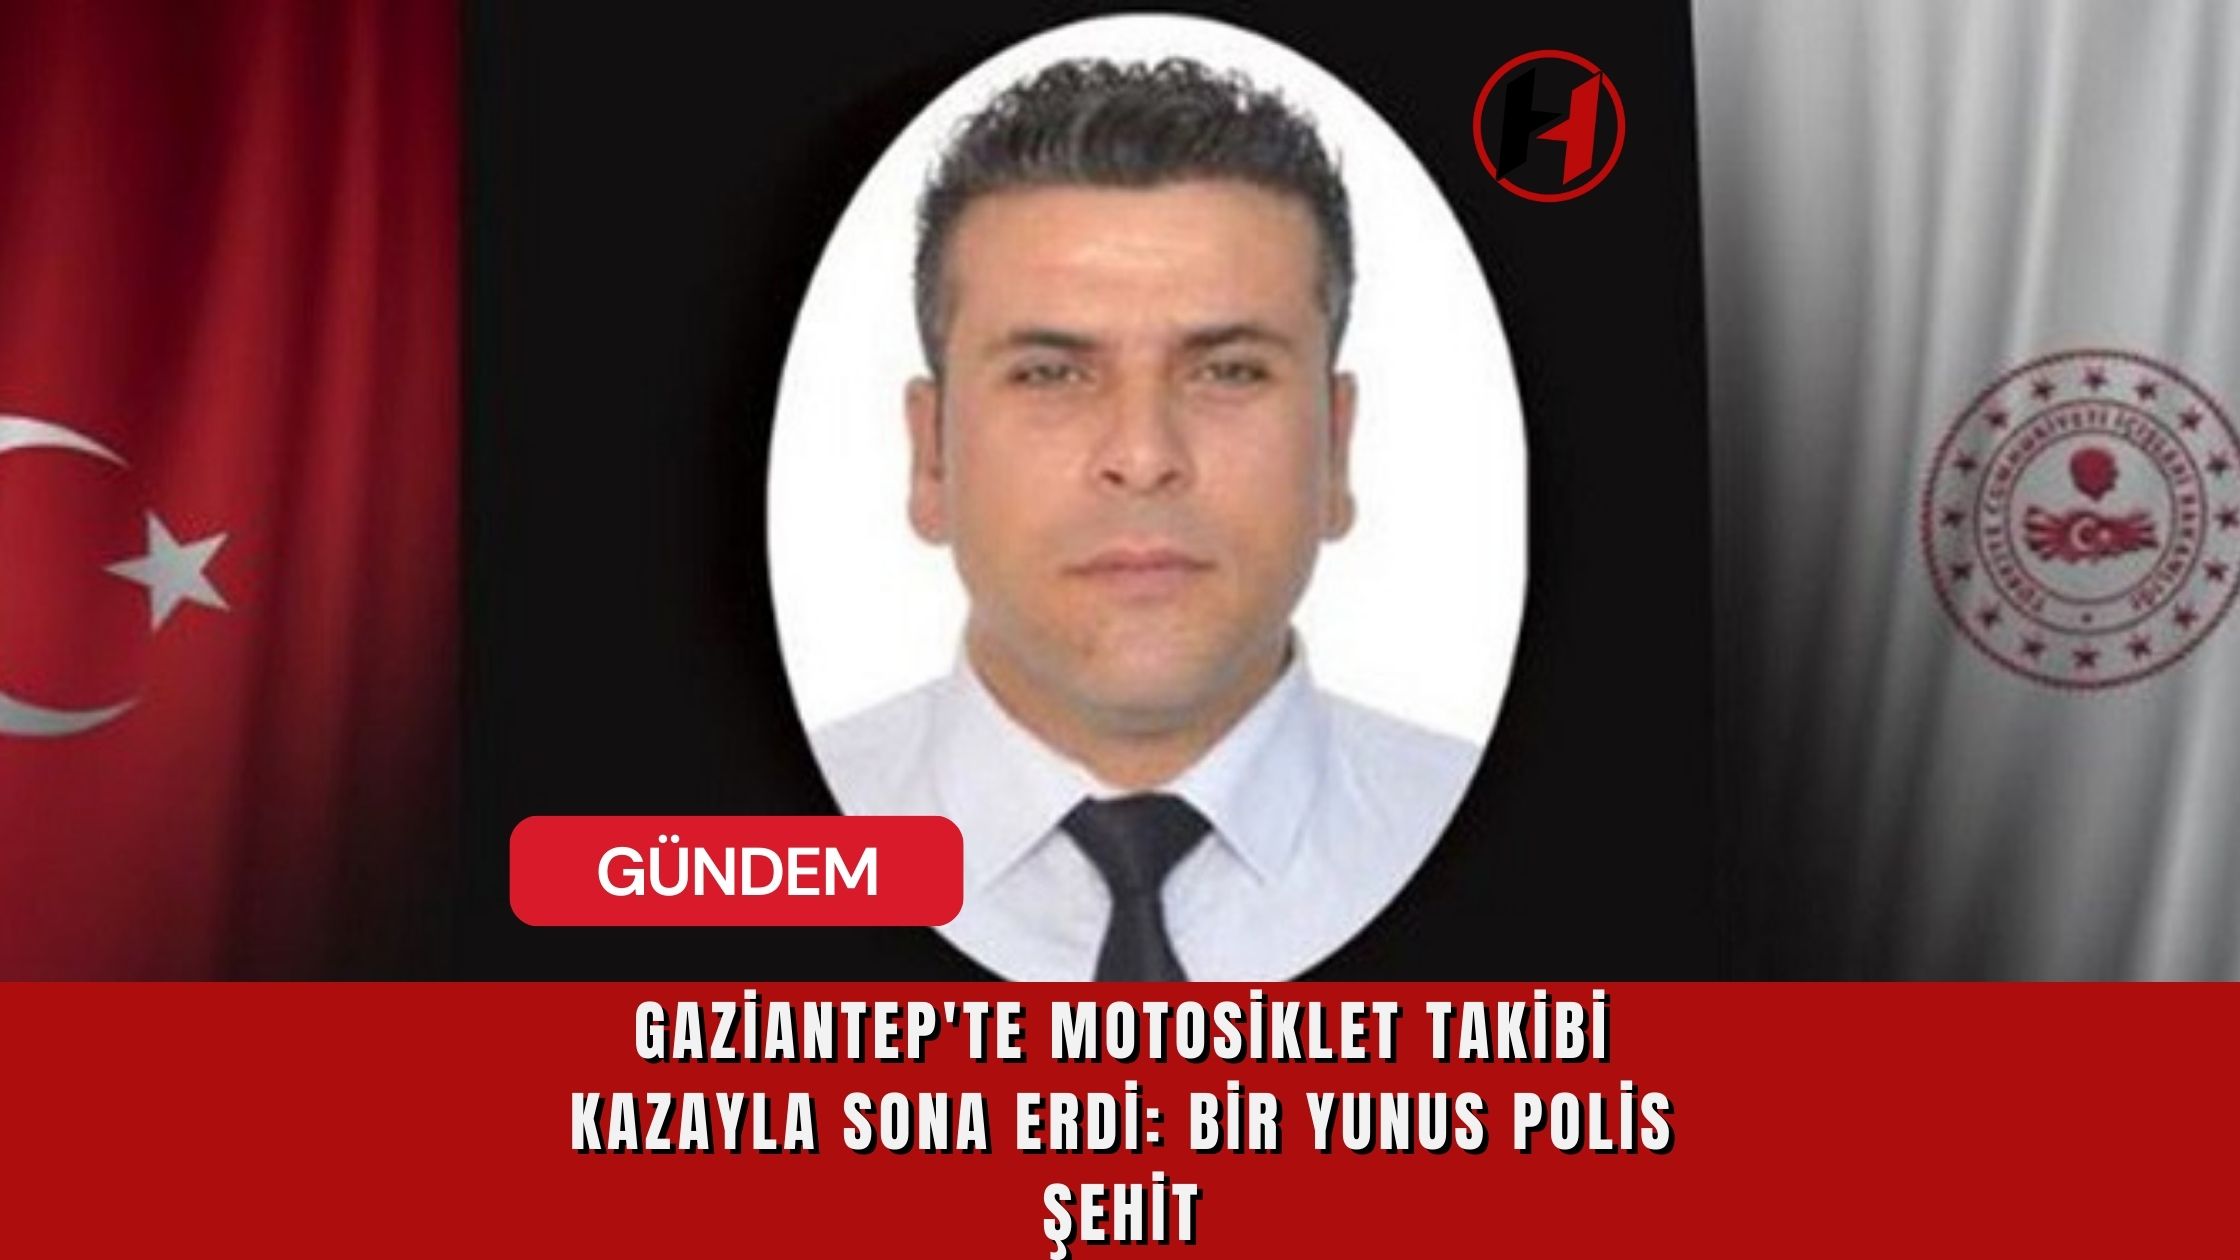 Gaziantep'te Motosiklet Takibi Kazayla Sona Erdi: Bir Yunus Polis Şehit